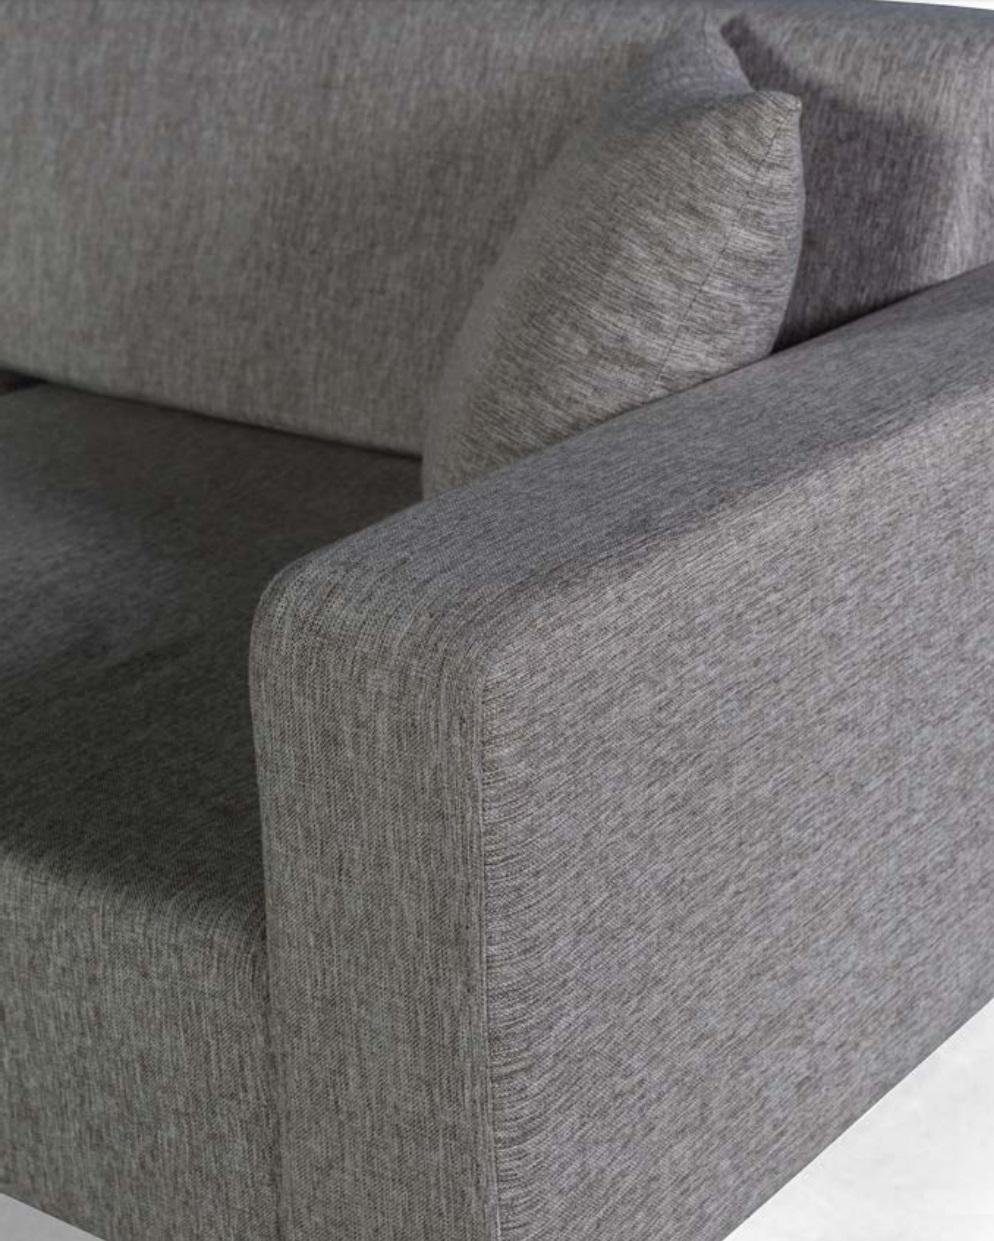 Made Dreisitzer JVmoebel Textil Polster Sofa Wohnzimmer in Sitz Sofa Europe Couchen Grau,